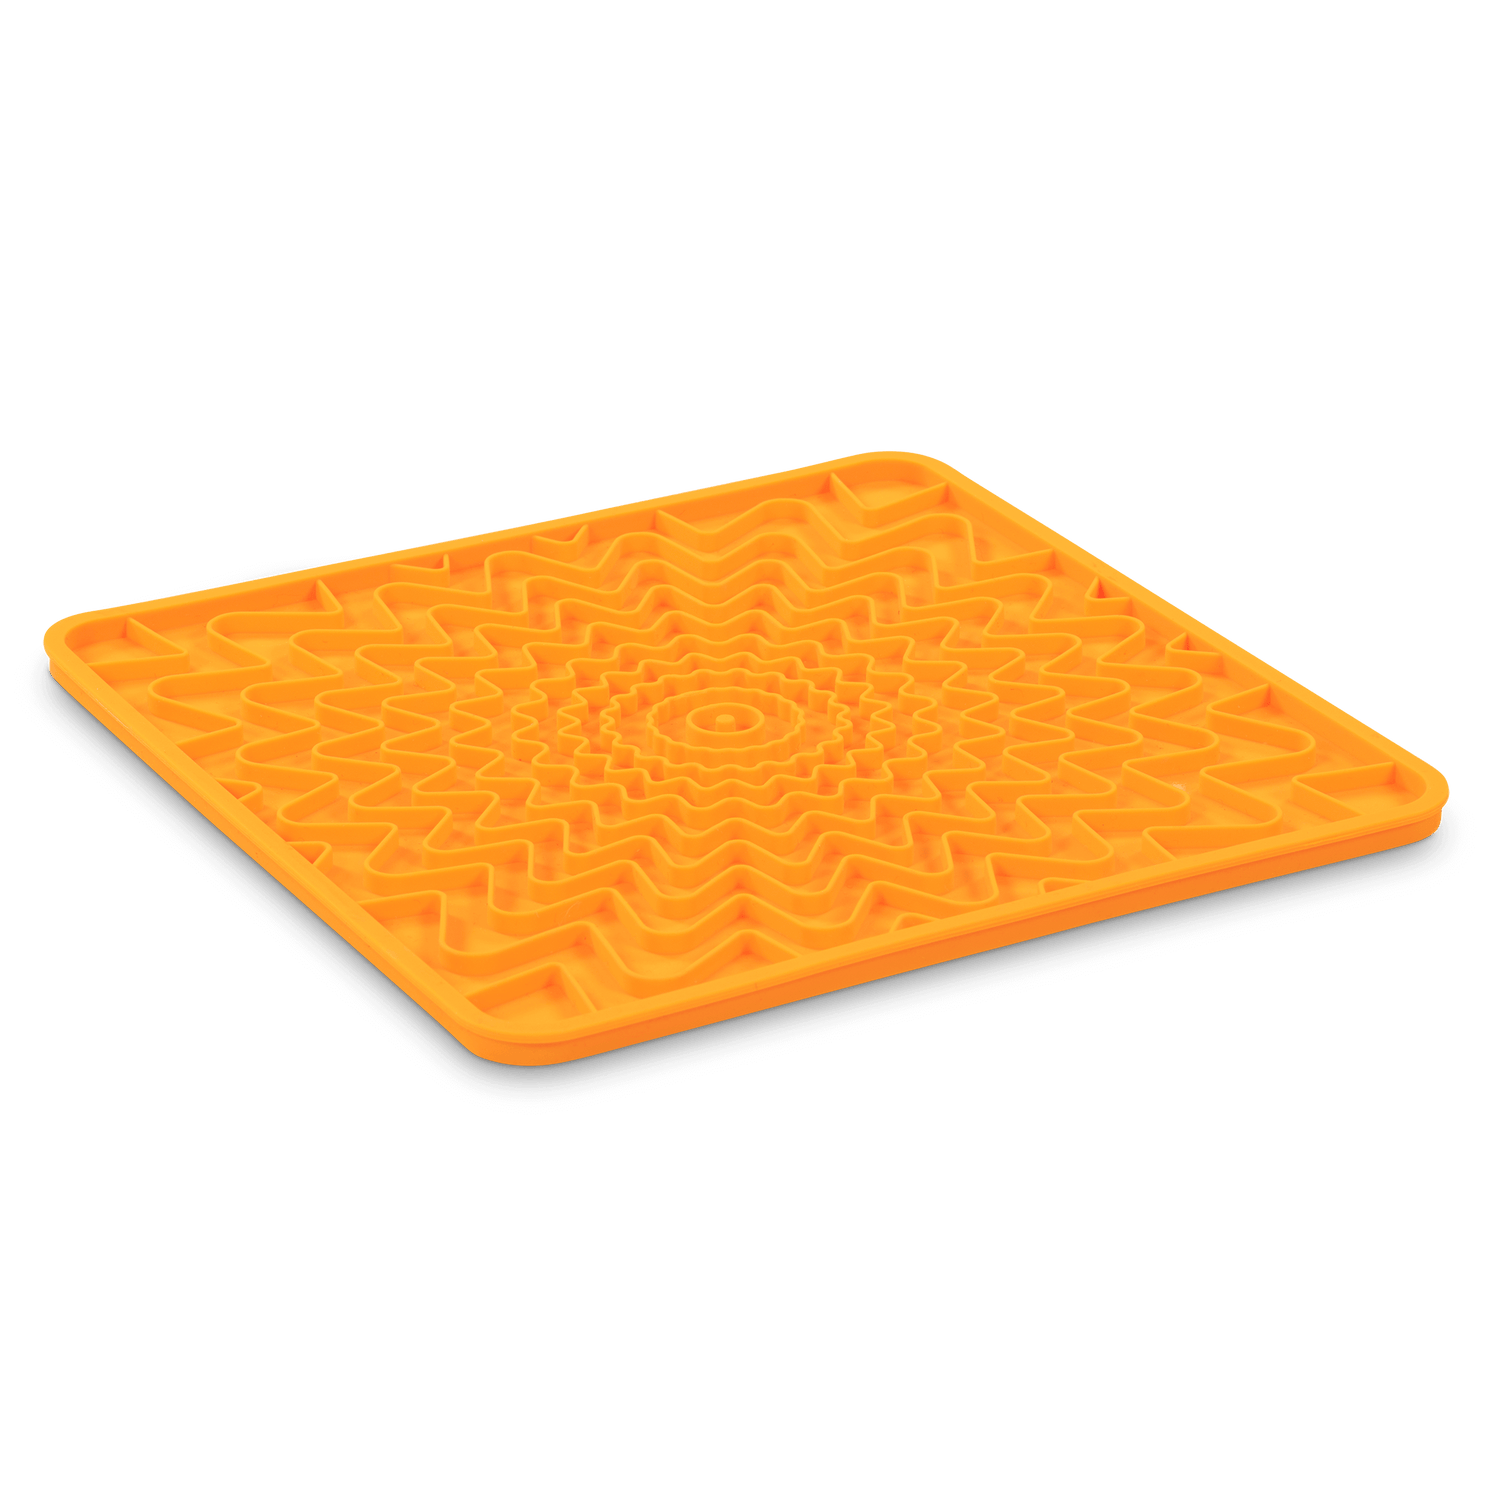 Orange enrichment dog lick mat.  Freezer and dishwasher safe.  